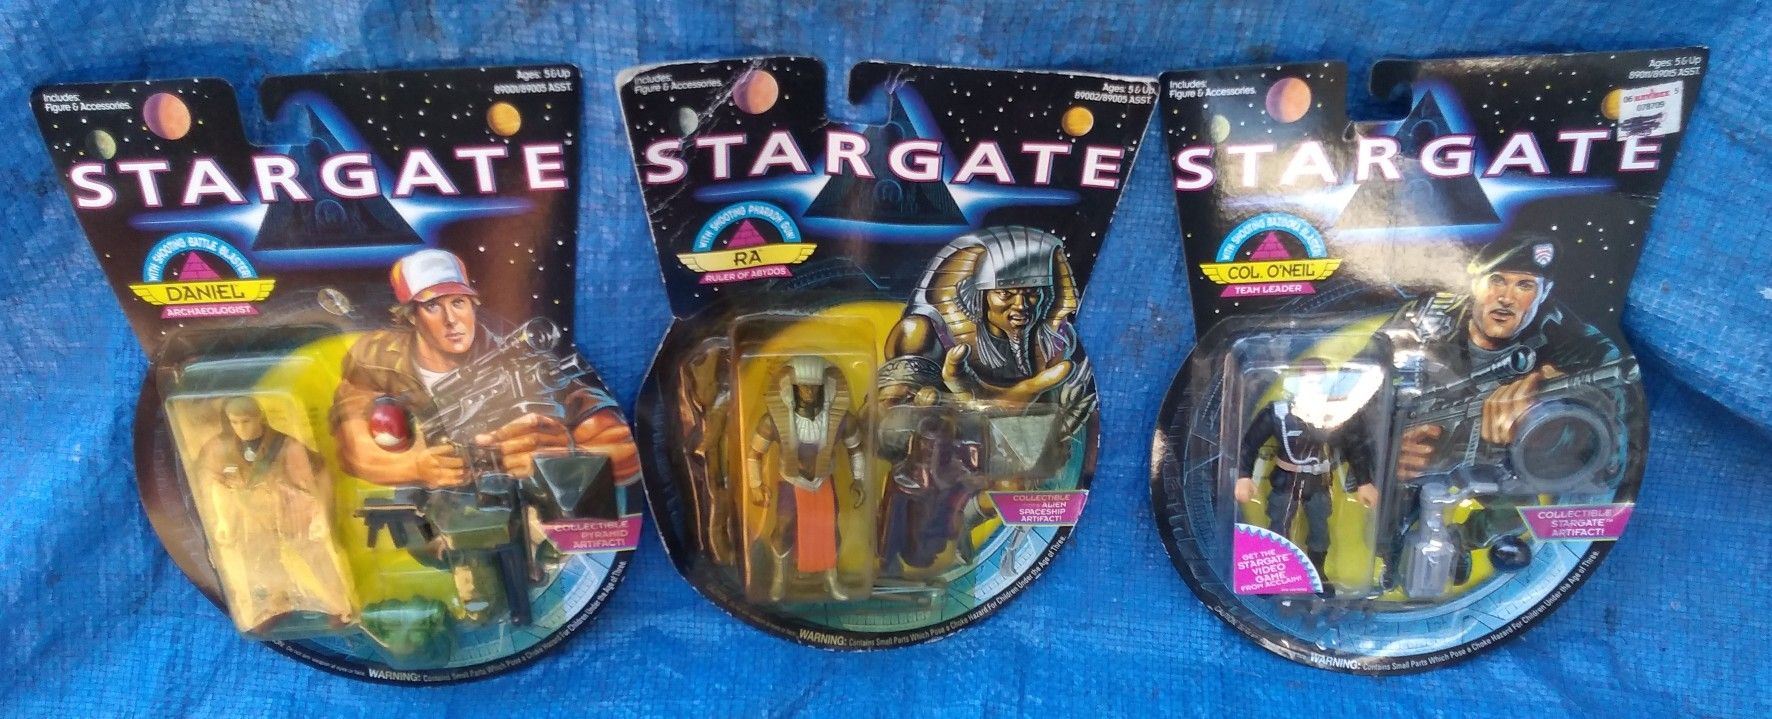 1994 Hasbro Stargate MOC MIP Action Figure Lot Vintage Collectible